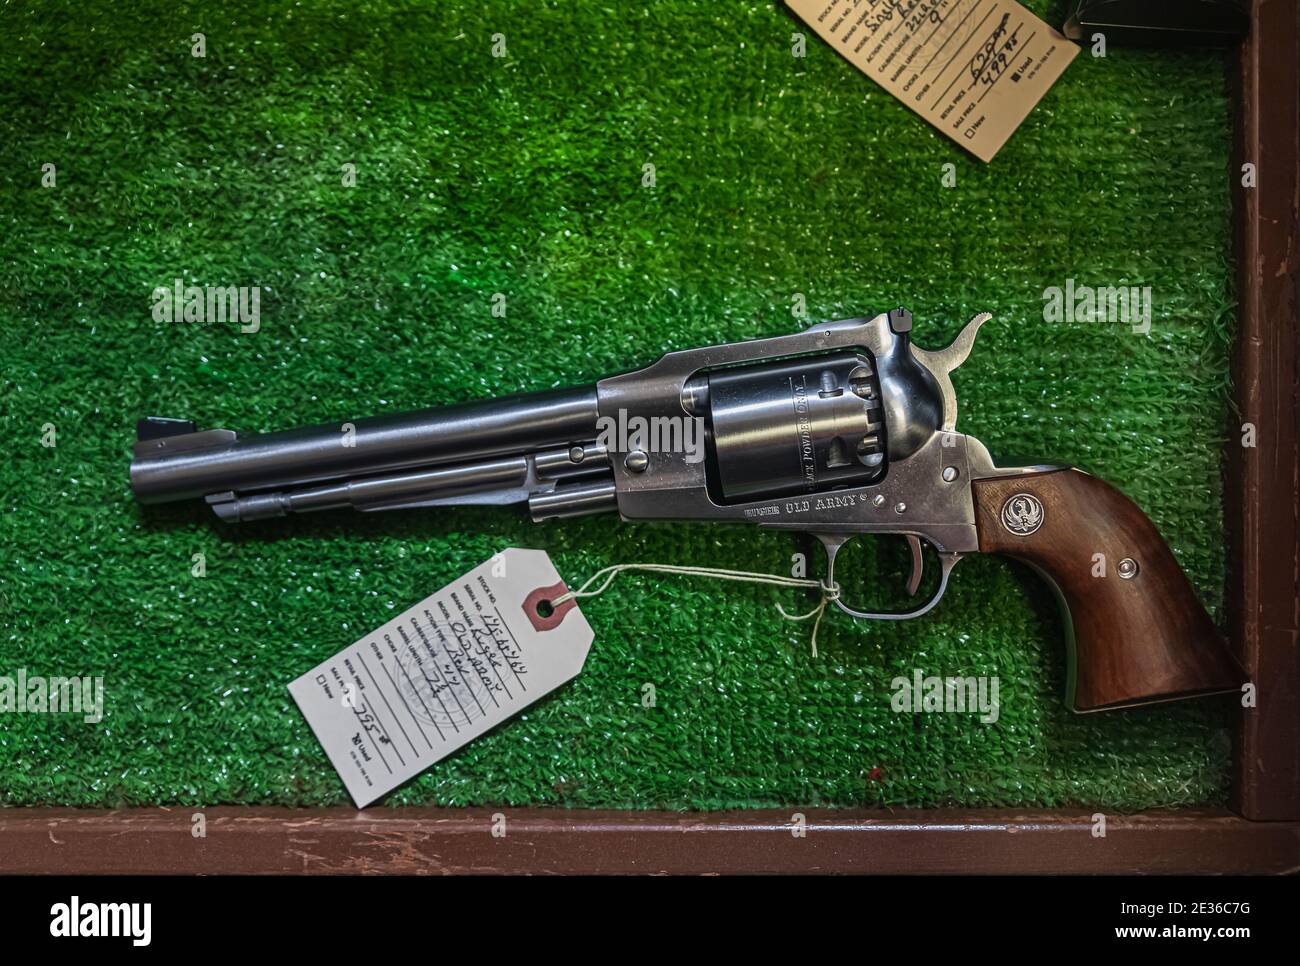 Placerville, USA - November 25 2020: Zeitgemäße Reproduktion eines Vintage Black Powder Cap und Ball Ruger Old Army 44 Kaliber Revolver in einem Waffenladen Stockfoto